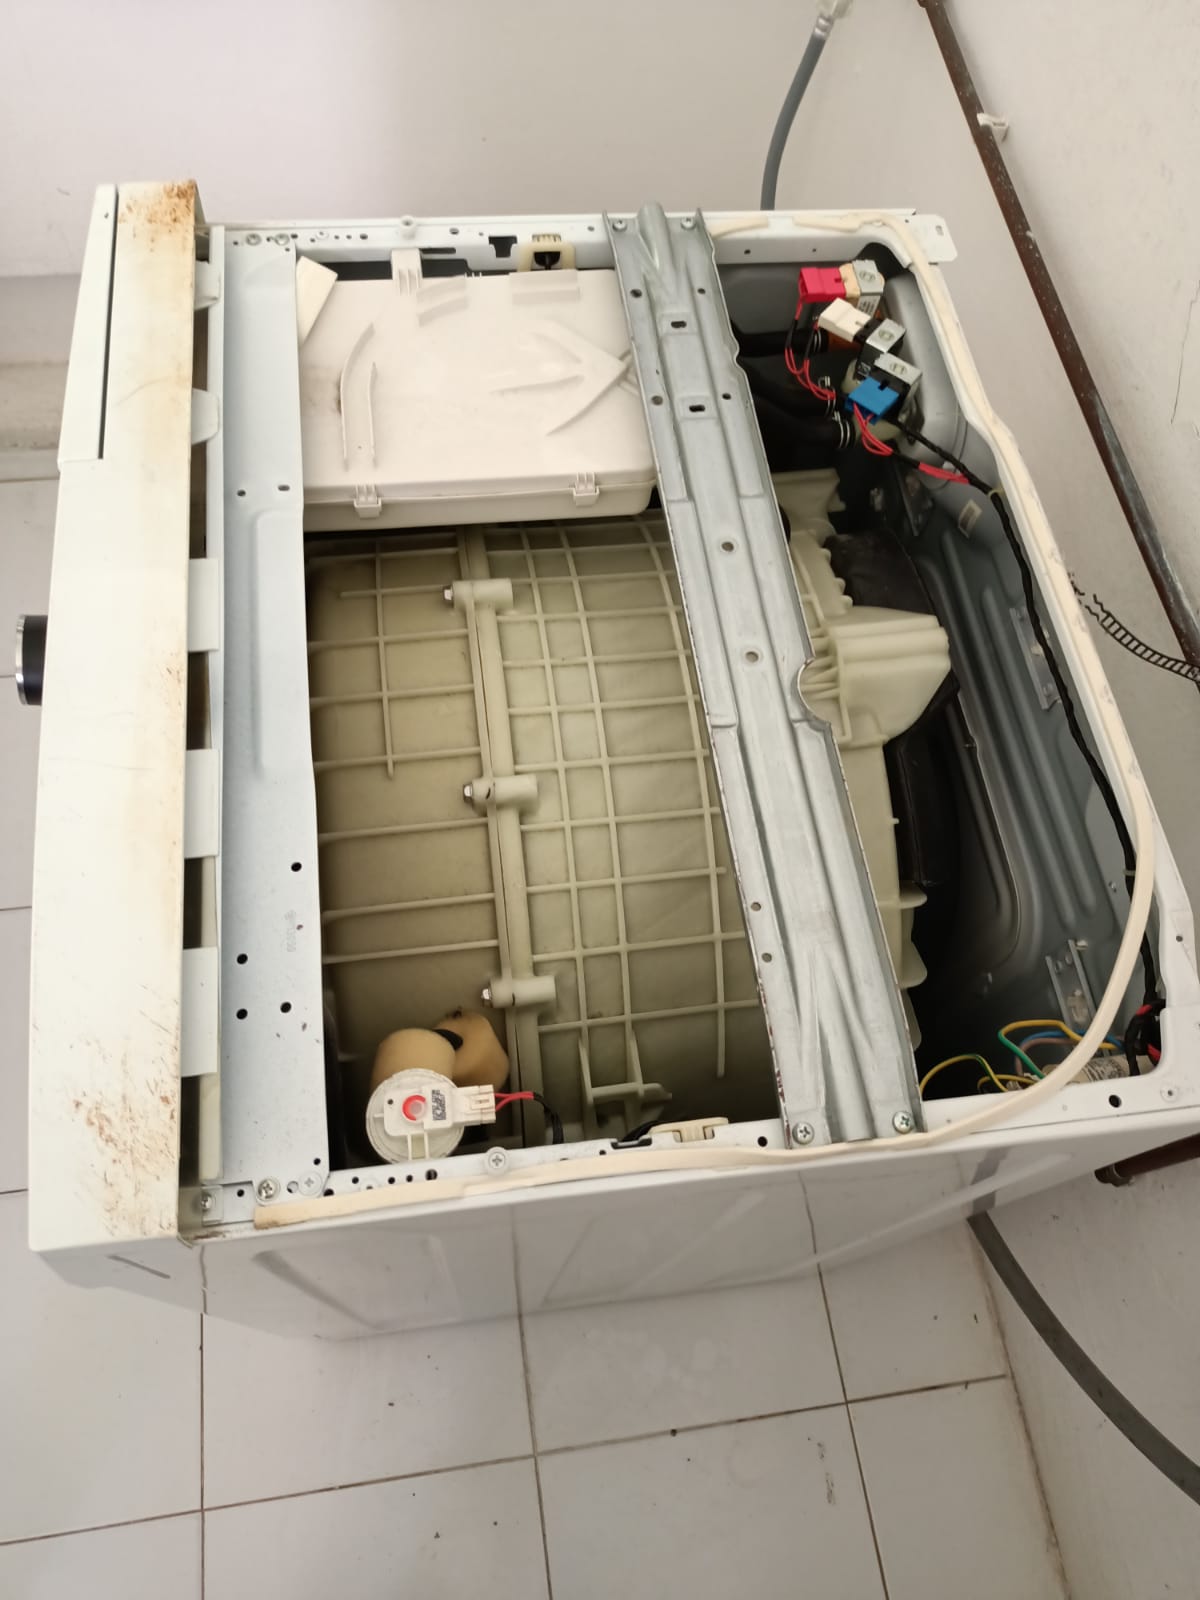 Washing Machine Checking And Repair Drainage Issue 2